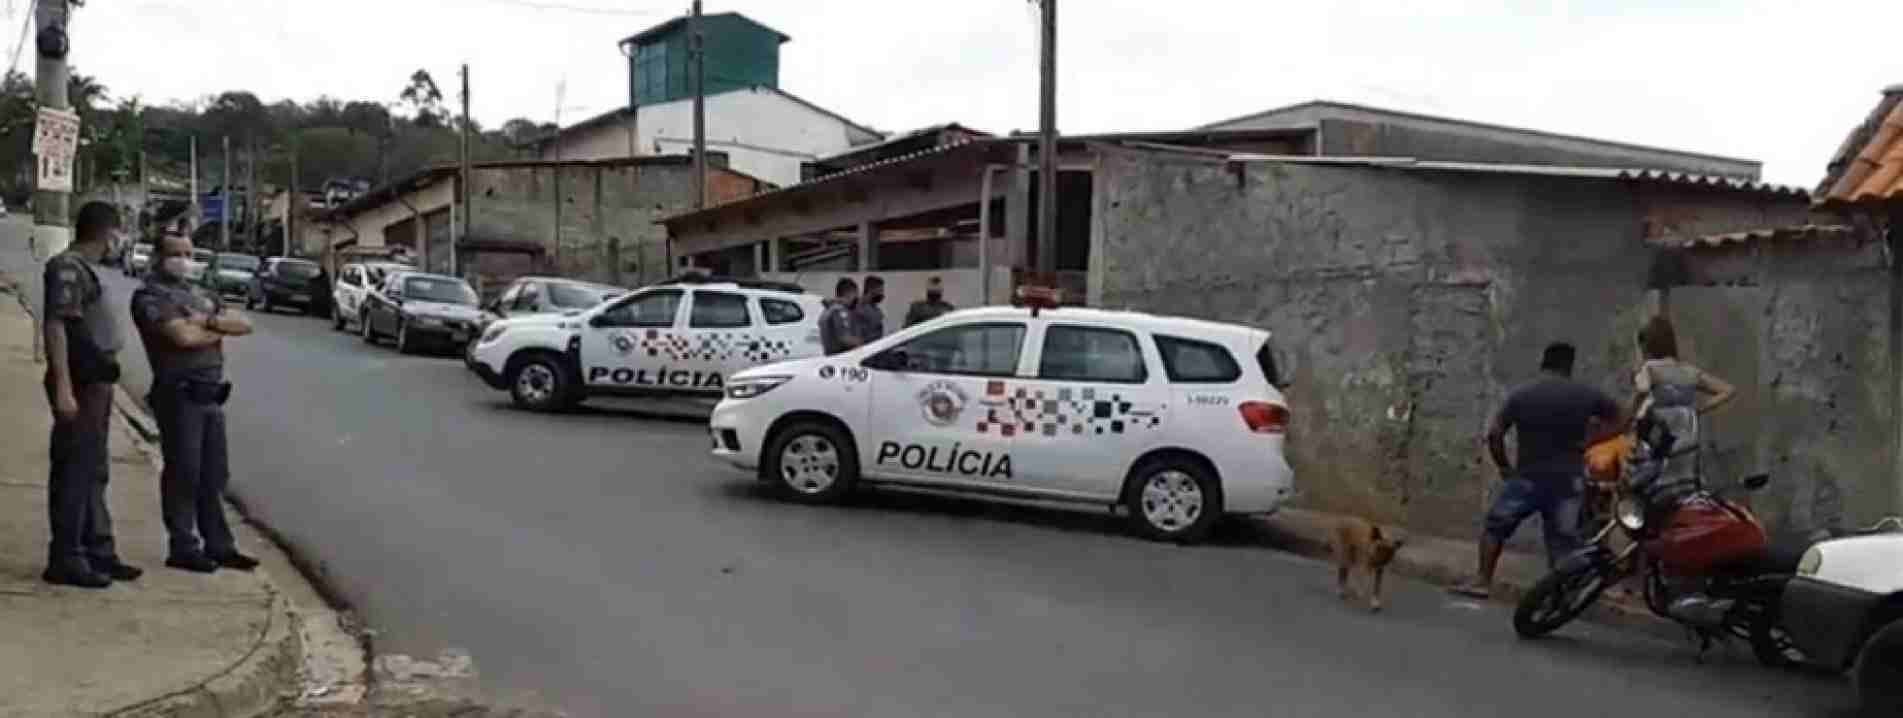 Briga de família termina com homem baleado e policial ferido em São Roque.